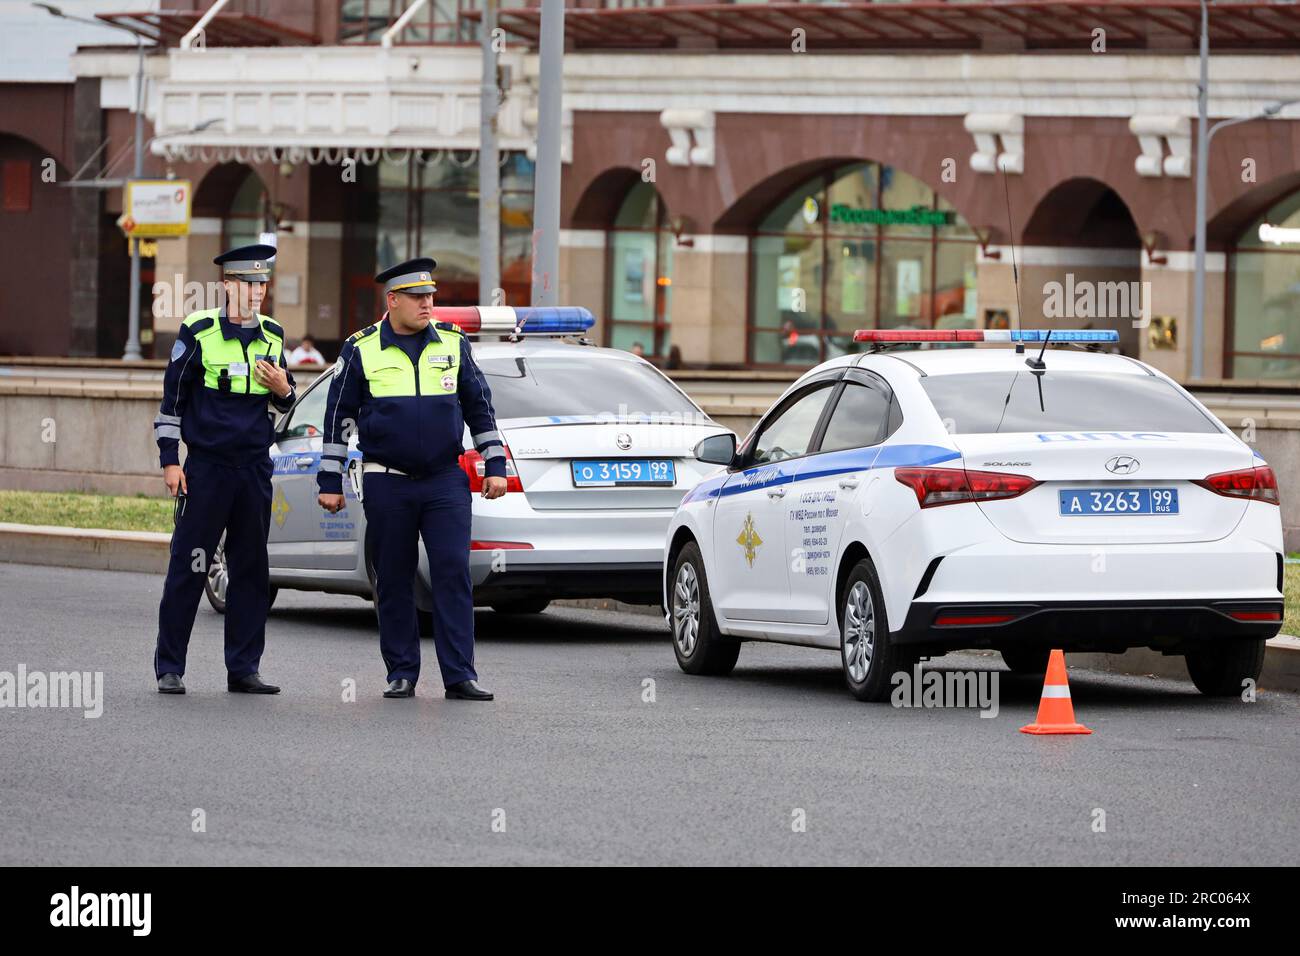 Die russische Polizei Auto mit Blaulicht Stockfotografie - Alamy